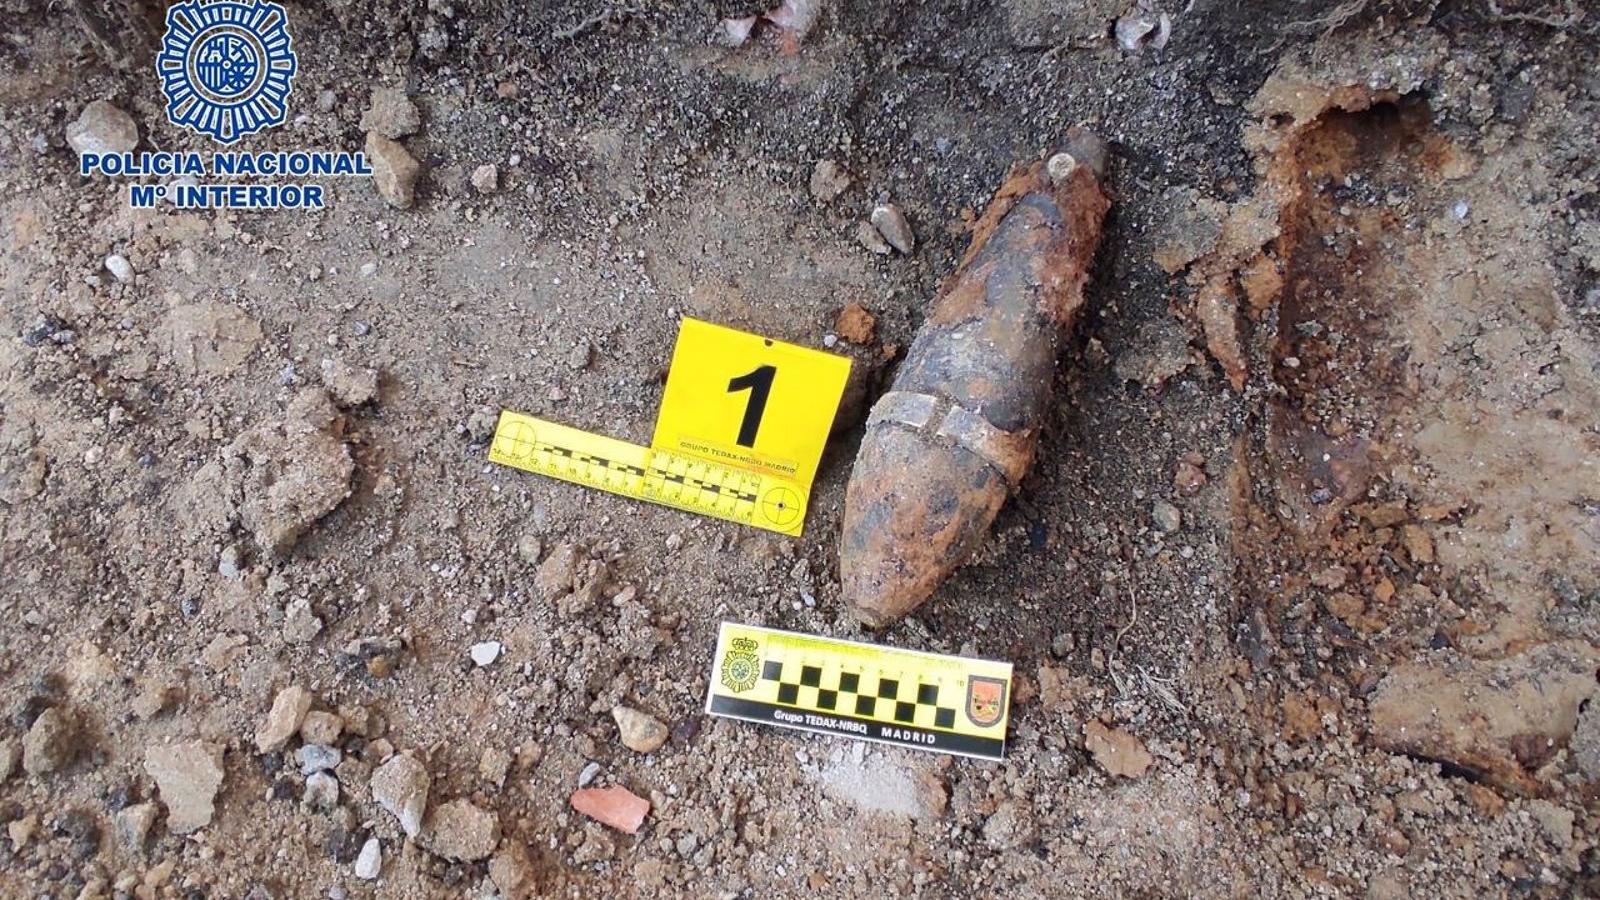  Desactivados dos artefactos explosivos de la Guerra Civil localizados en dos obras en Vicálvado y Chamberí